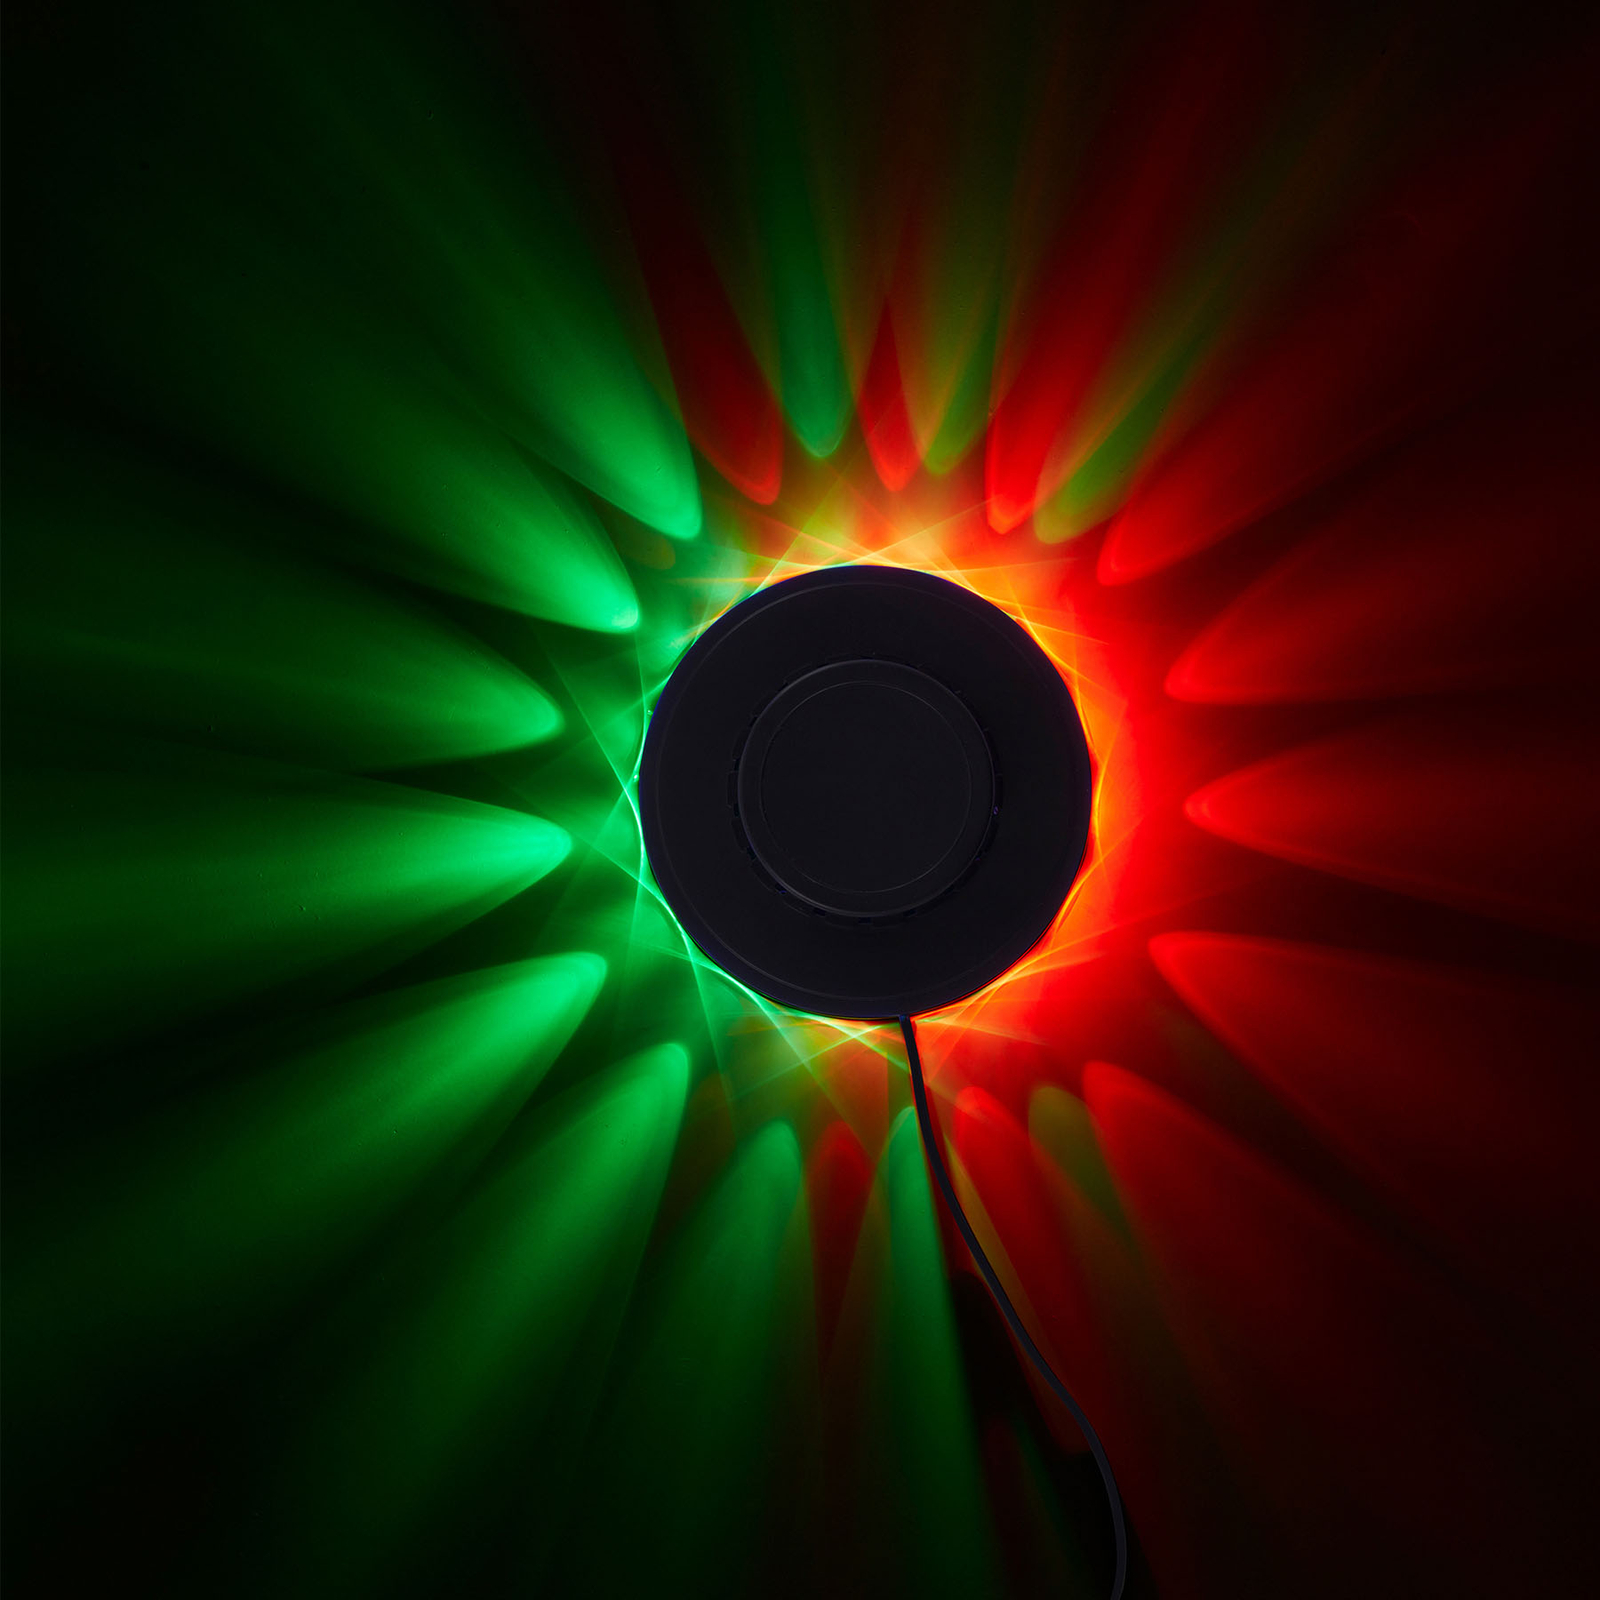 Ροδάκι φωτός RGB LED - διακοσμητικό φως με αισθητήρα μουσικής